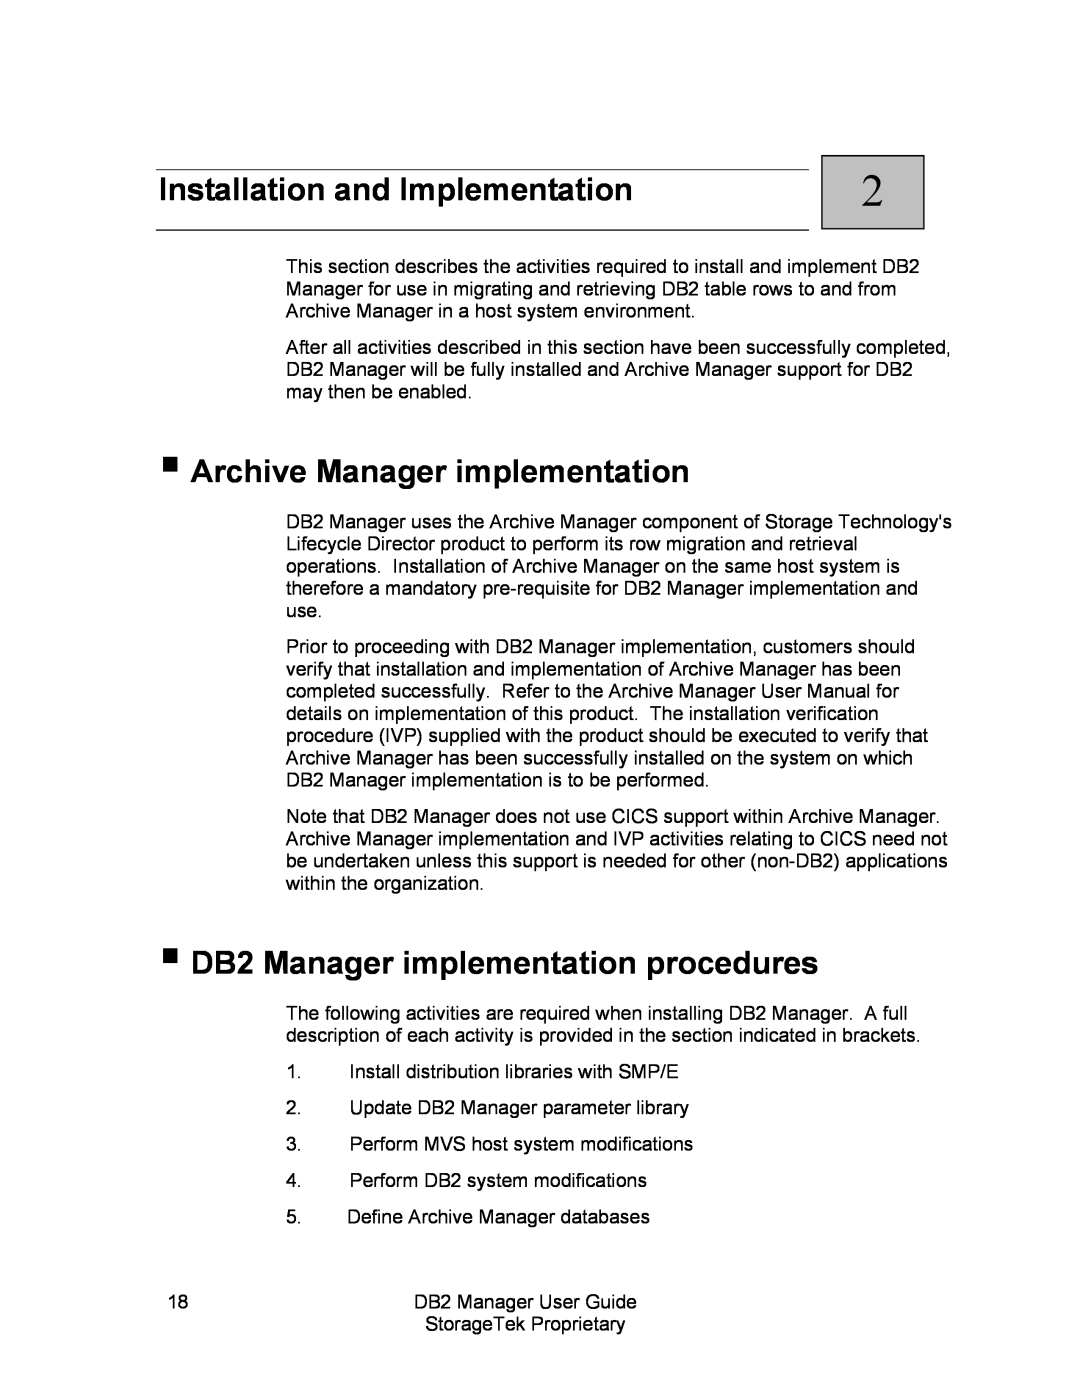 StorageTek 312564001 manual Installation and Implementation, Archive Manager implementation 